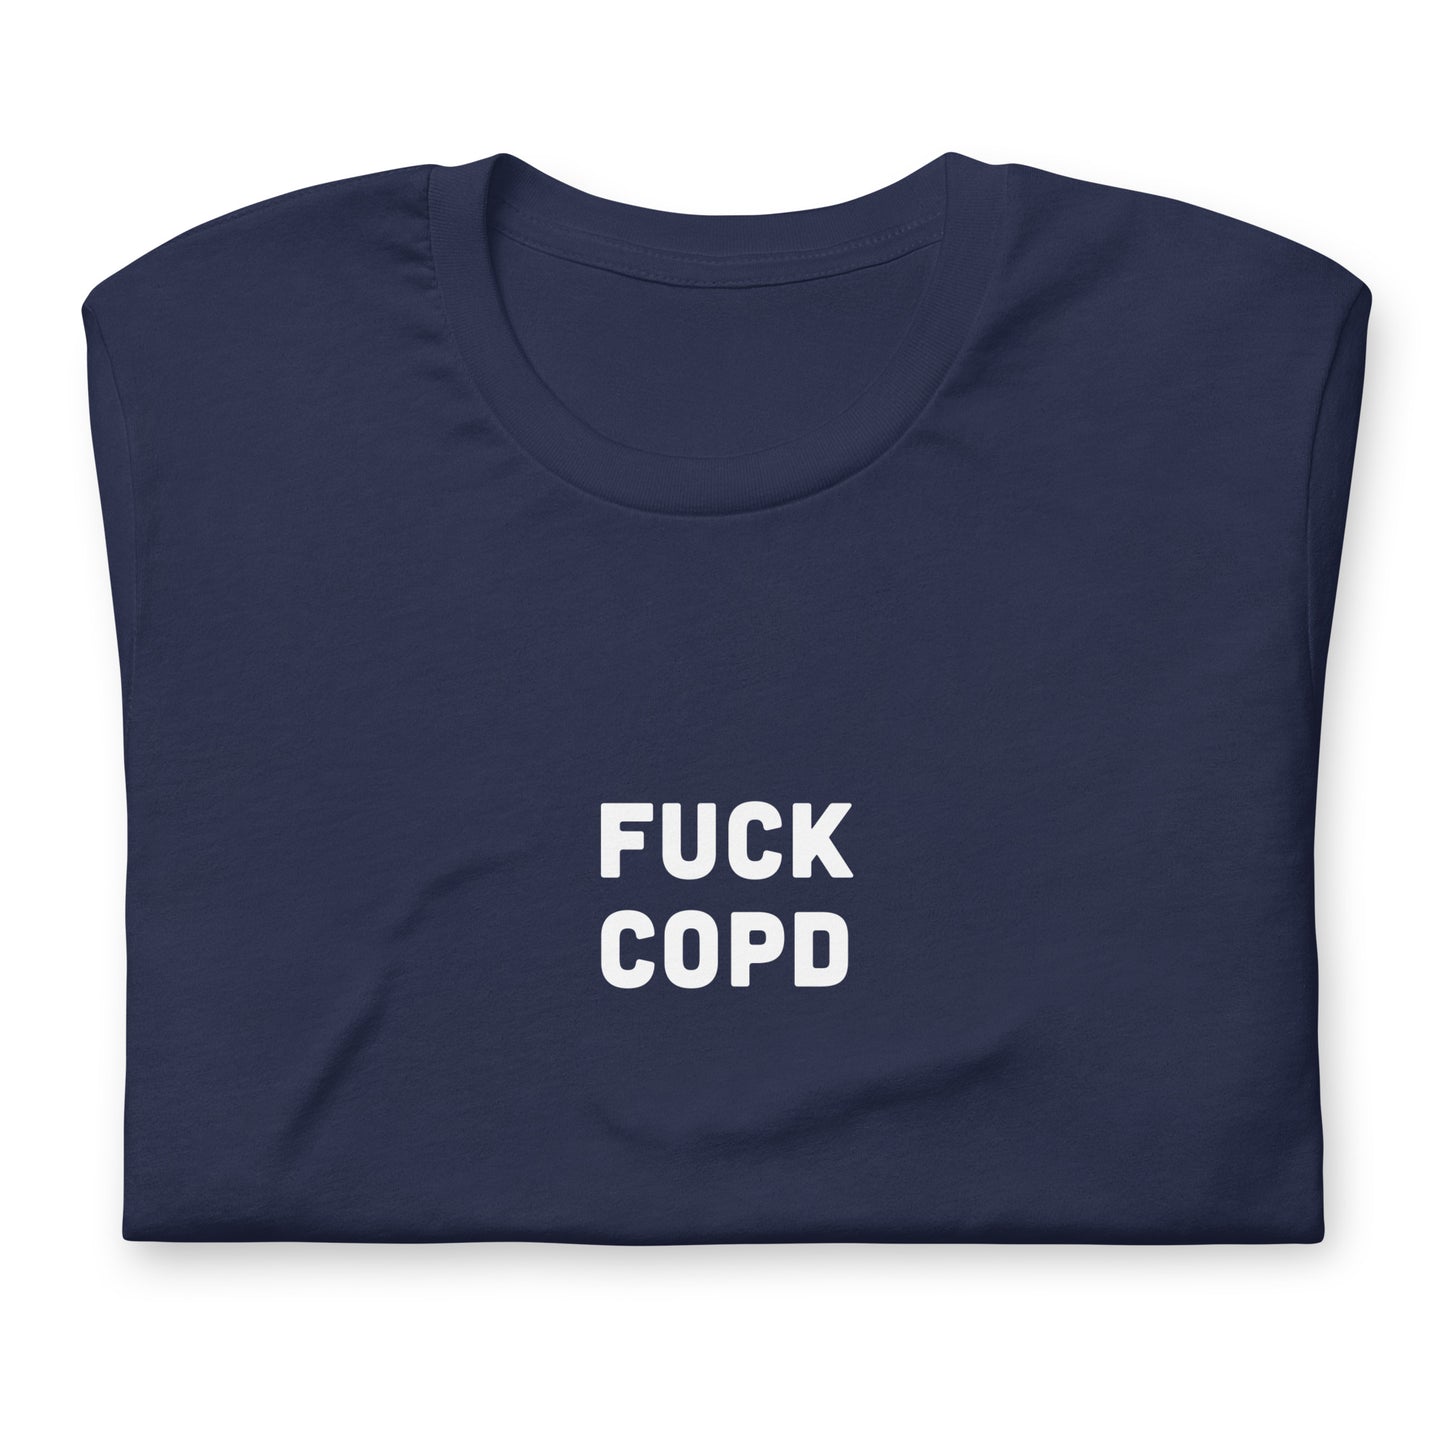 Fuck Copd T-Shirt Size S Color Black